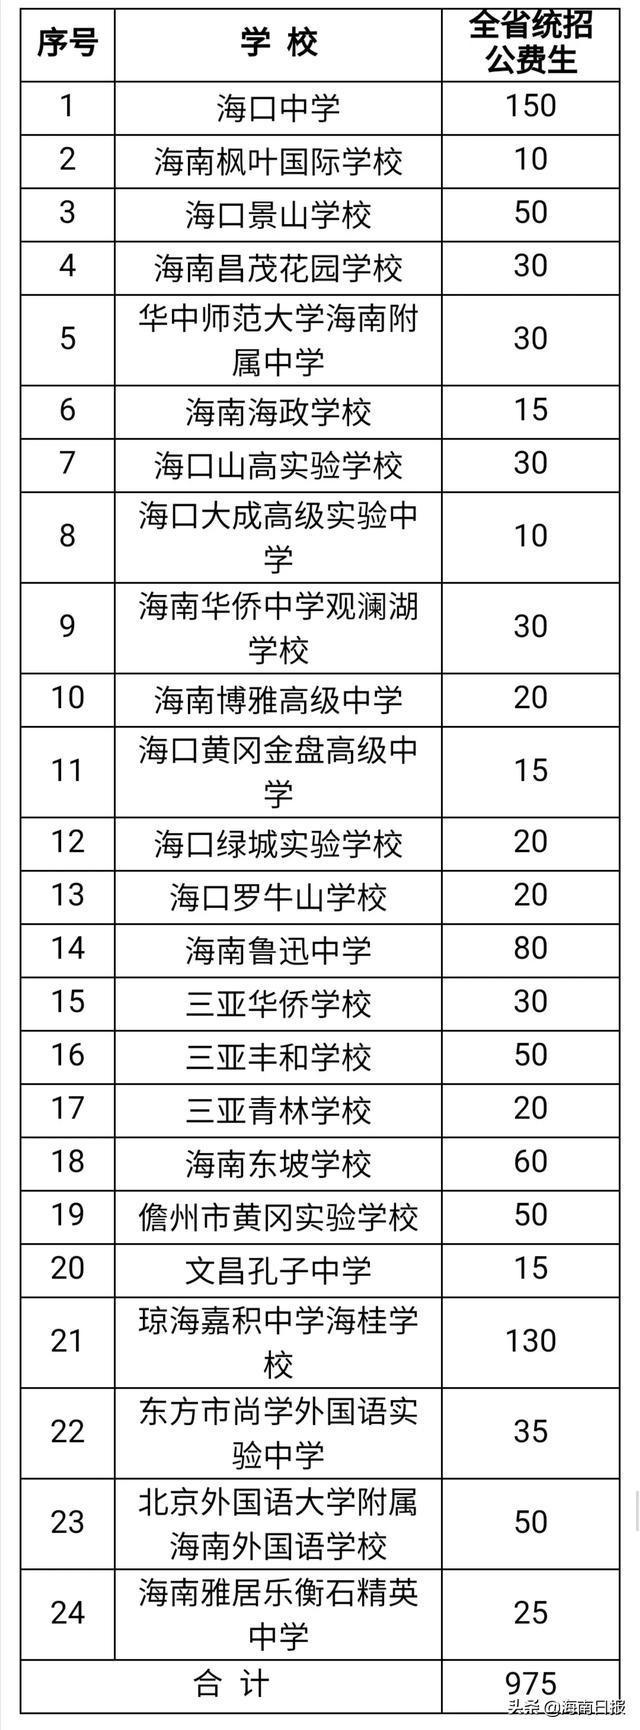 海南省2020年普通高中学校招生计划来了!(附详细列表)